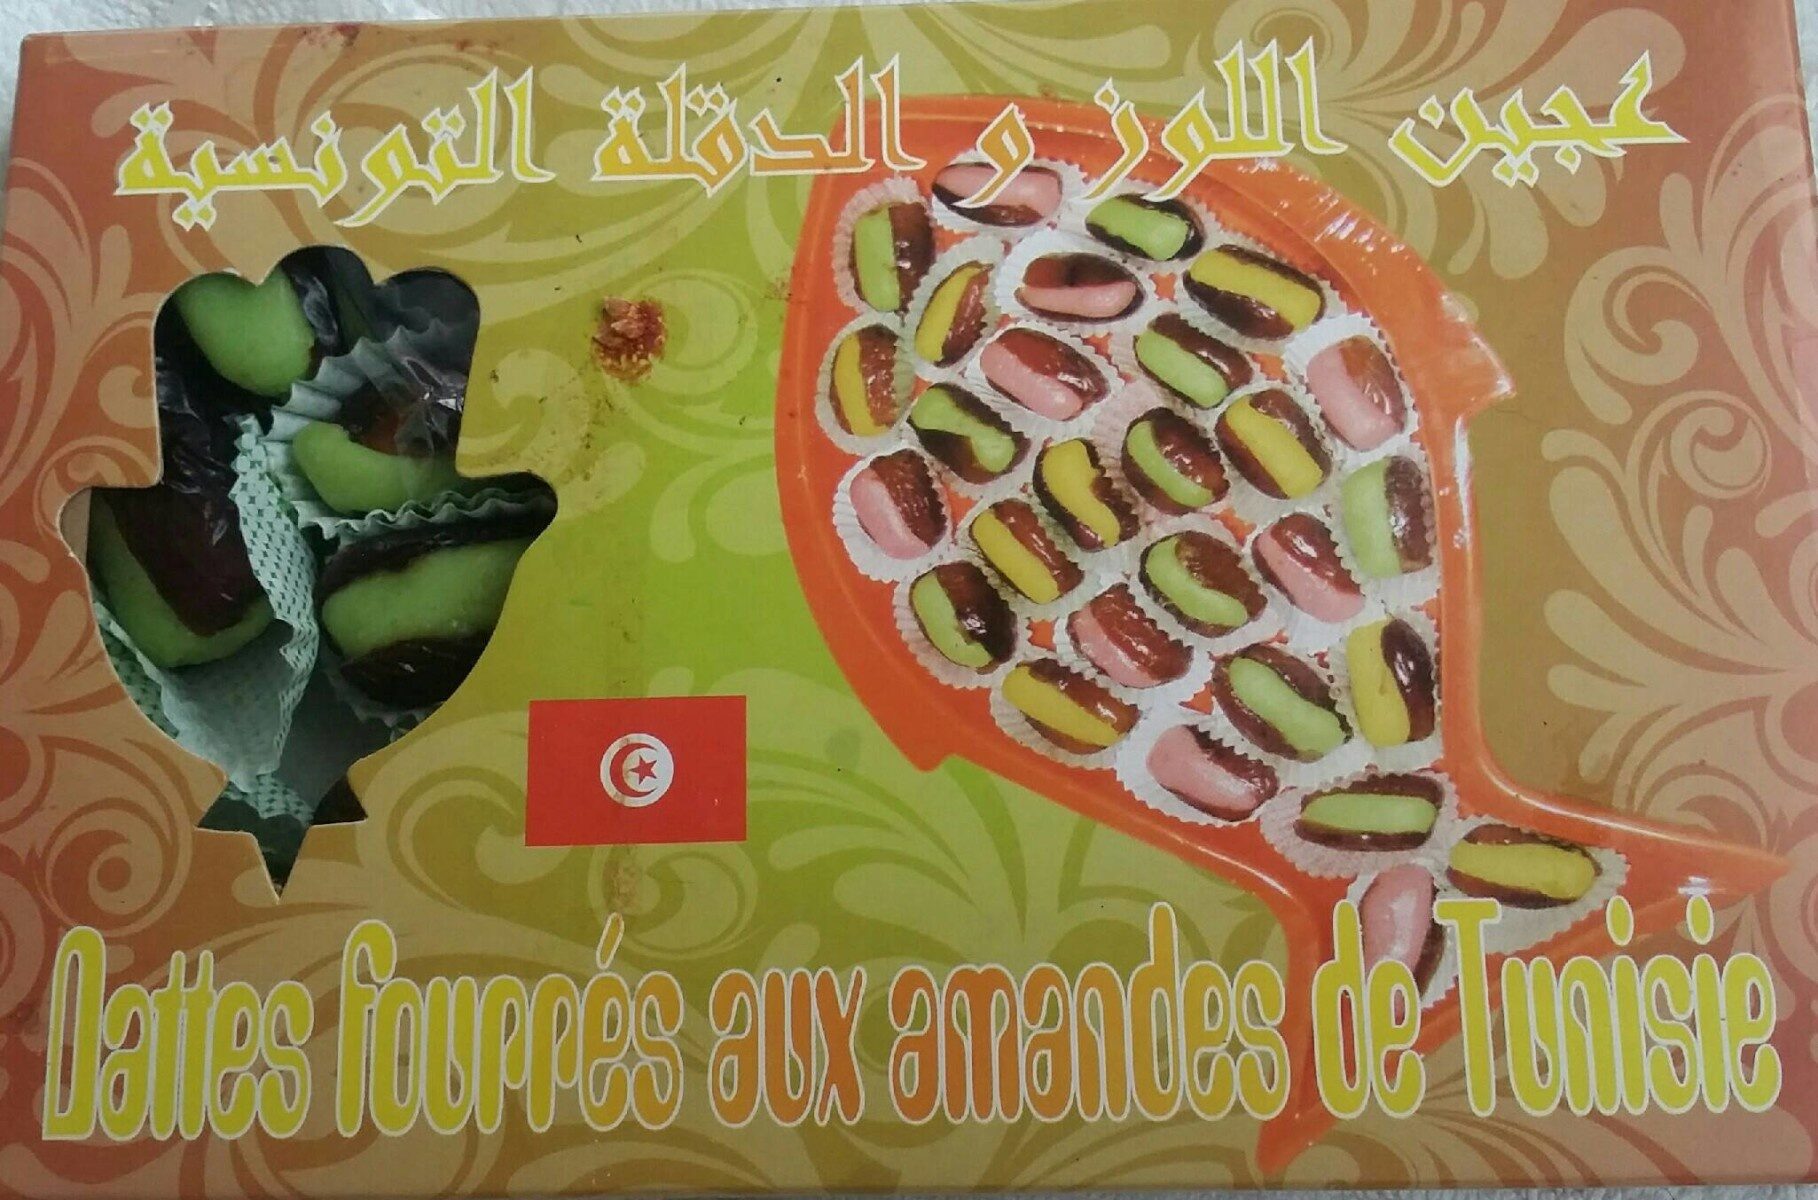 Dattes fourrées aux amandes de Tunisie - Product - fr